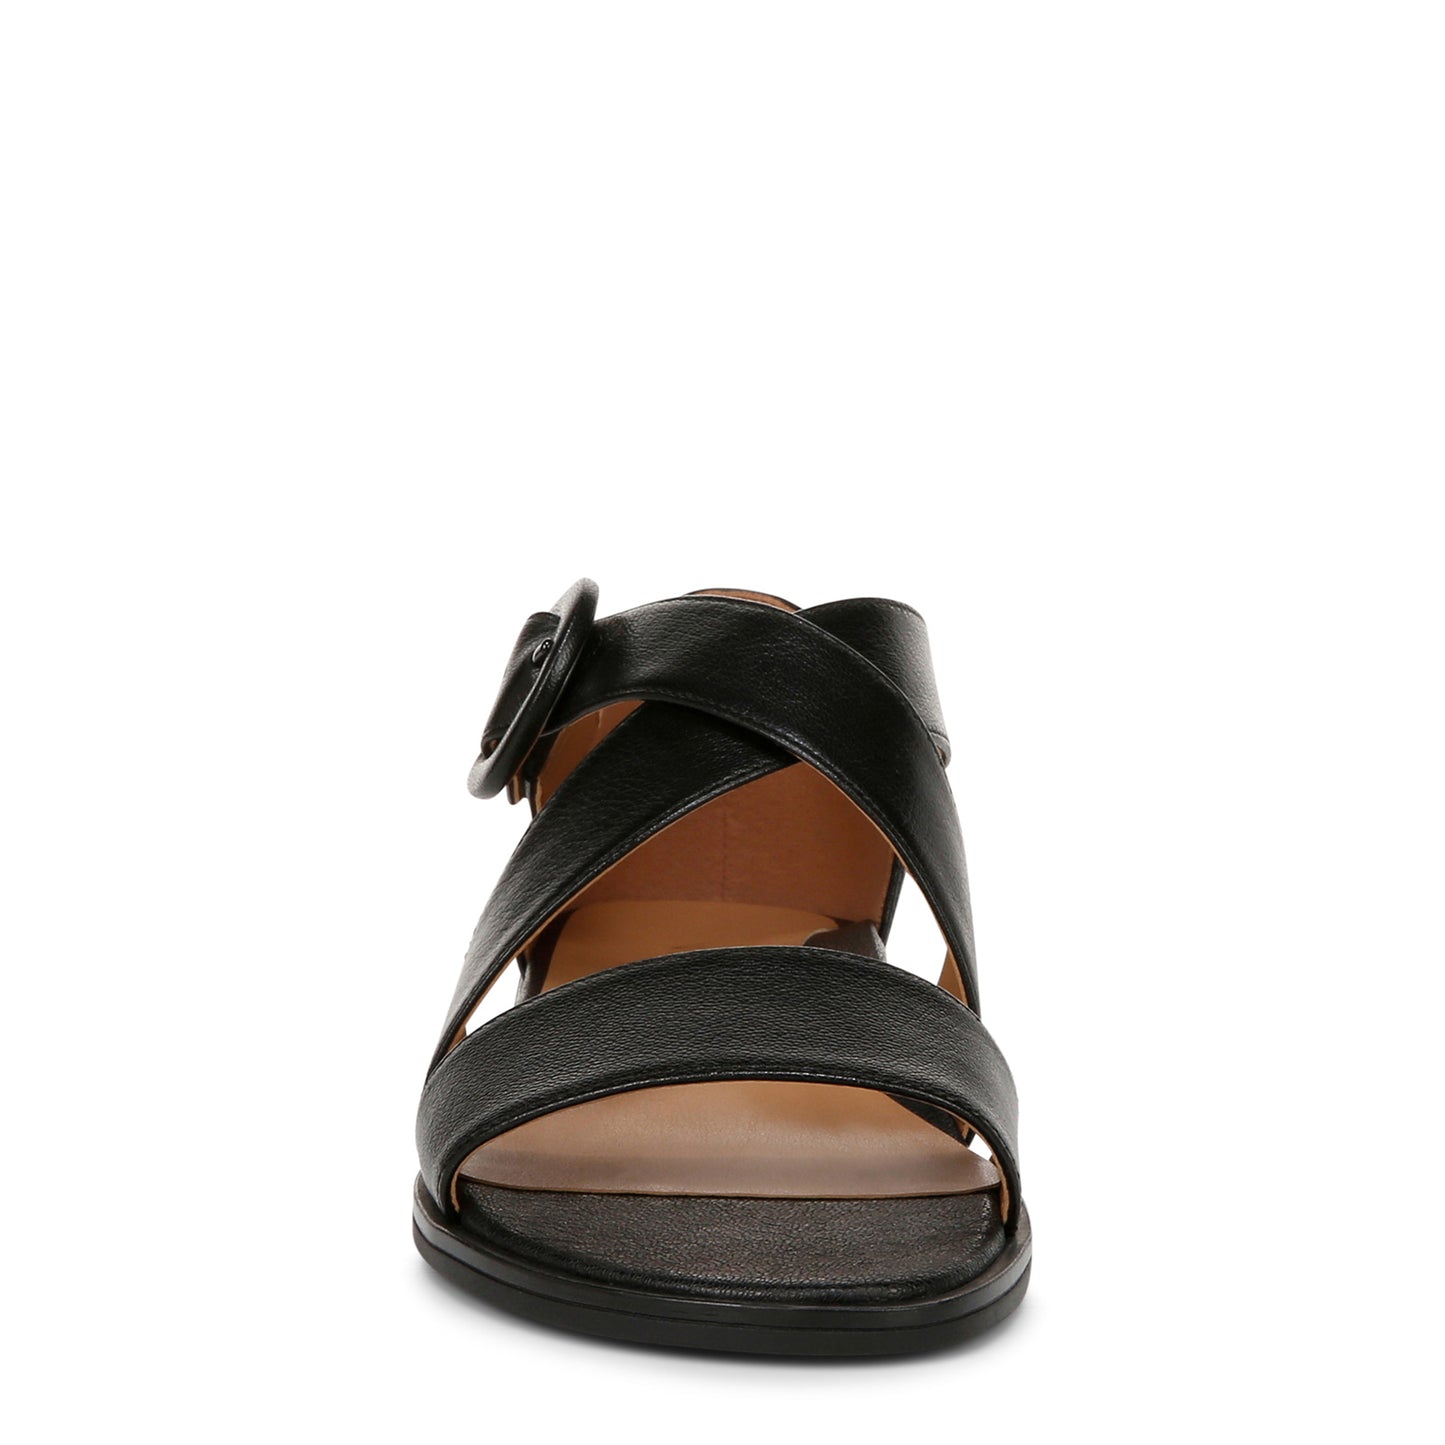 Peltz Shoes  Women's Vionic Pacifica Sandal black I8656L2001